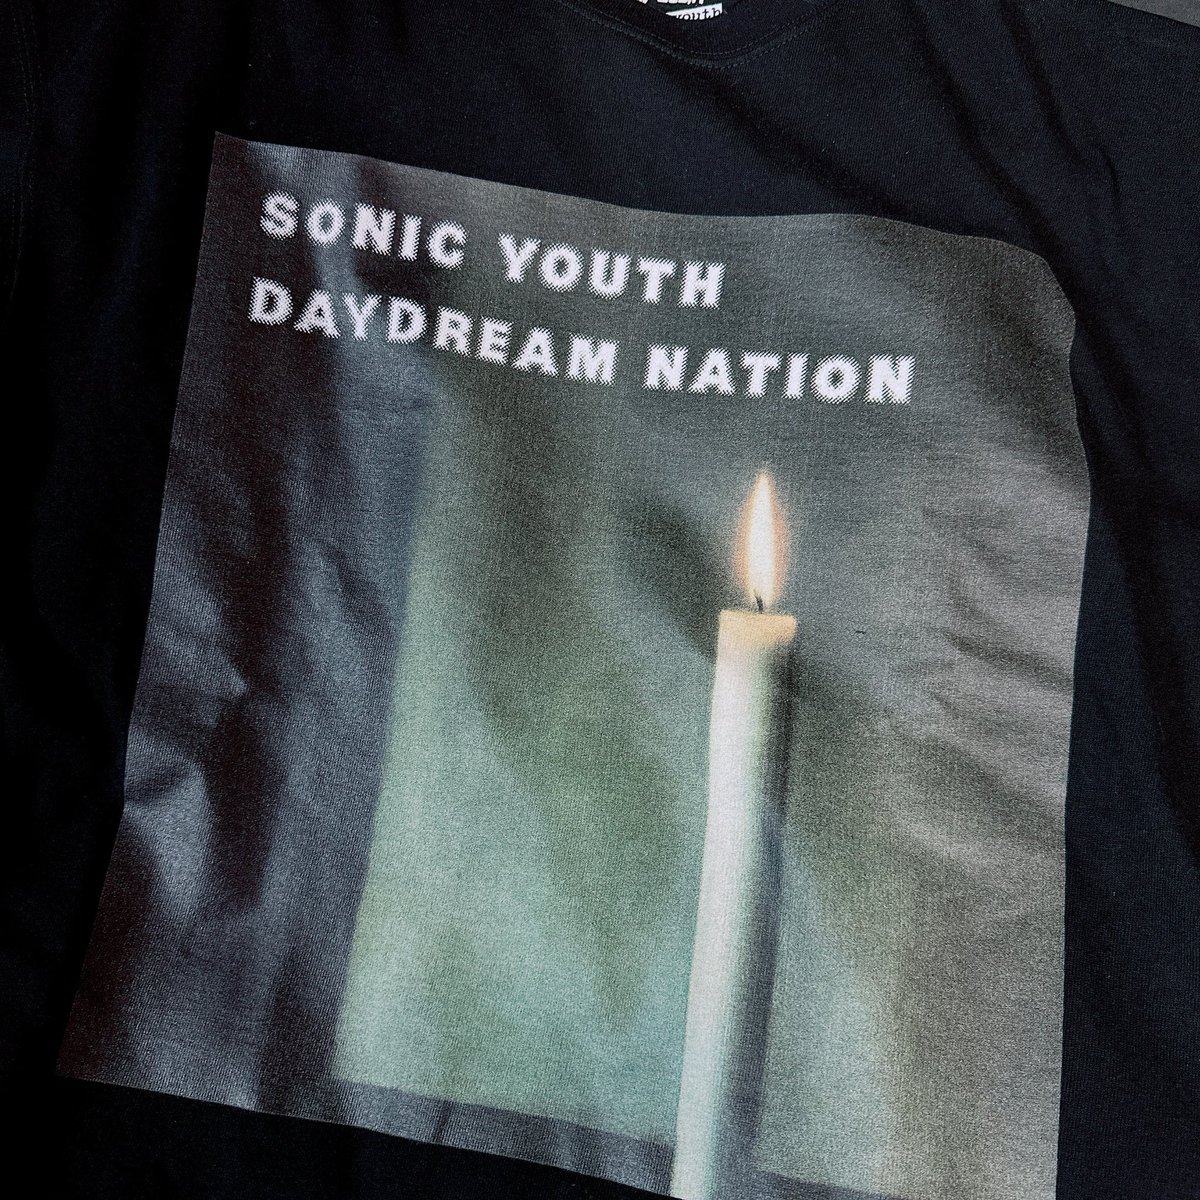 フリークスストアが今期展開しているバンドTシャツシリーズ、プリントがバカデカくて良い。Sonic YouthはDaydream Nationも珍しい。だいたいGoo、Dirty、Washing Machineだよね。